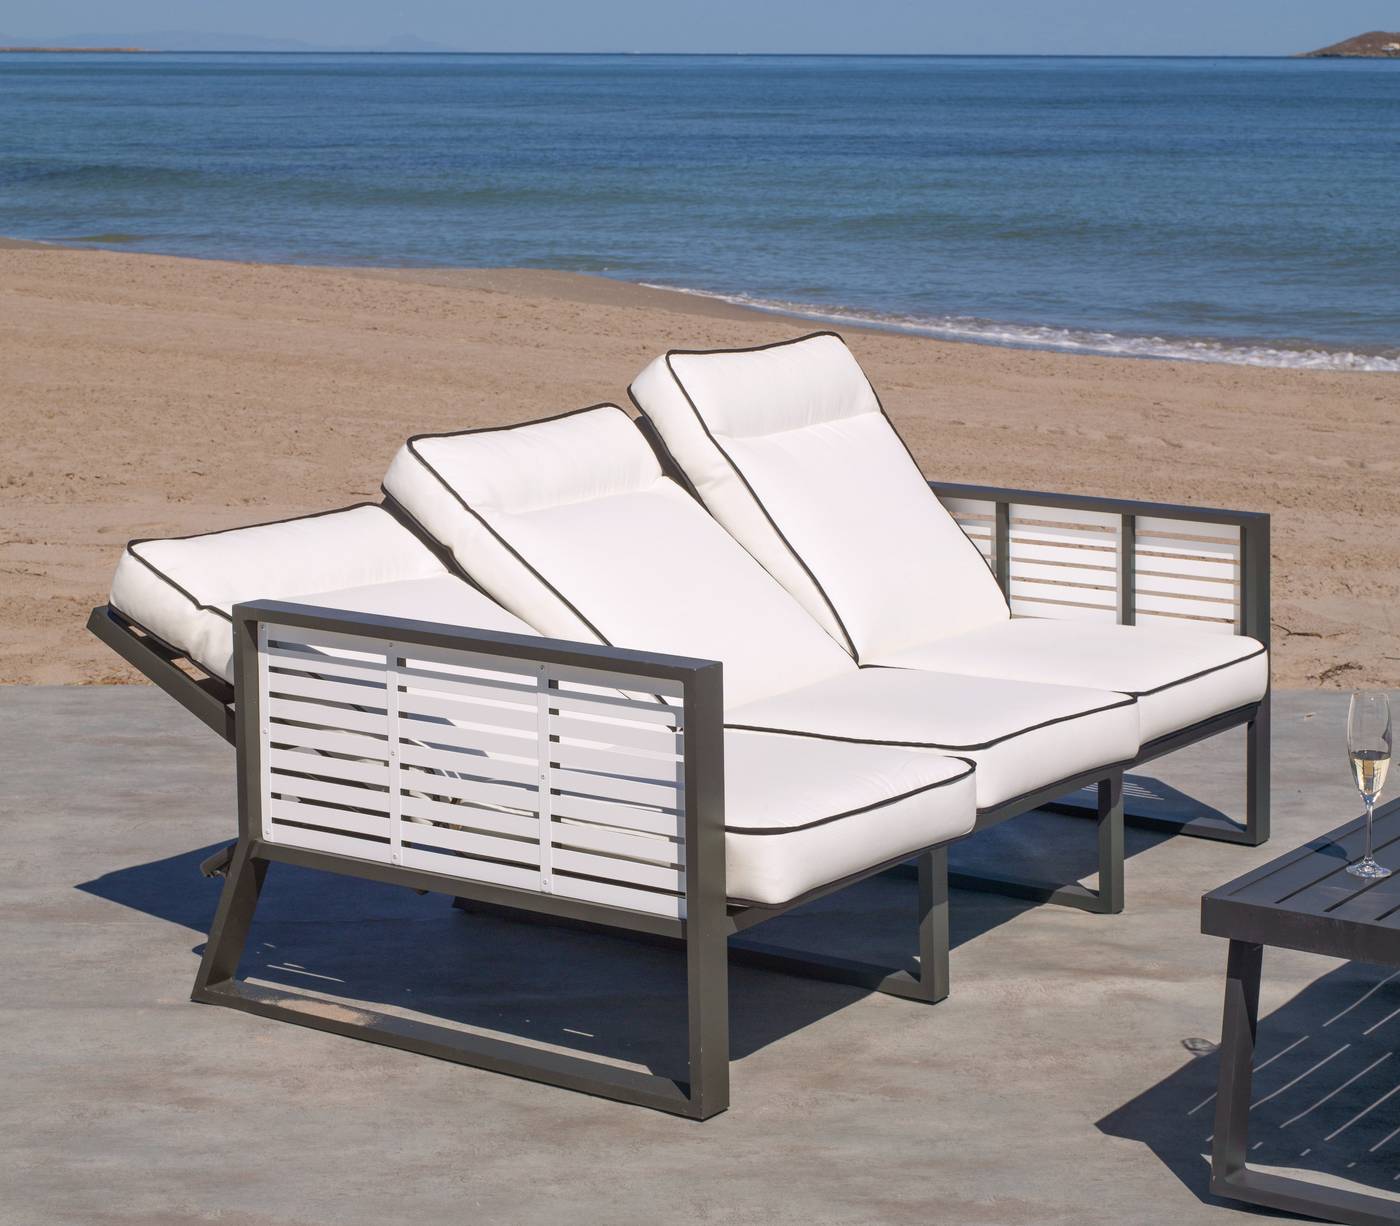 Set Aluminio Luxe Samira-8 - Exclusivo conjunto de alumnio bicolor: 1 sofá de 3 plazas reclinable + 2 sillones reclinables + 1 mesa de centro.